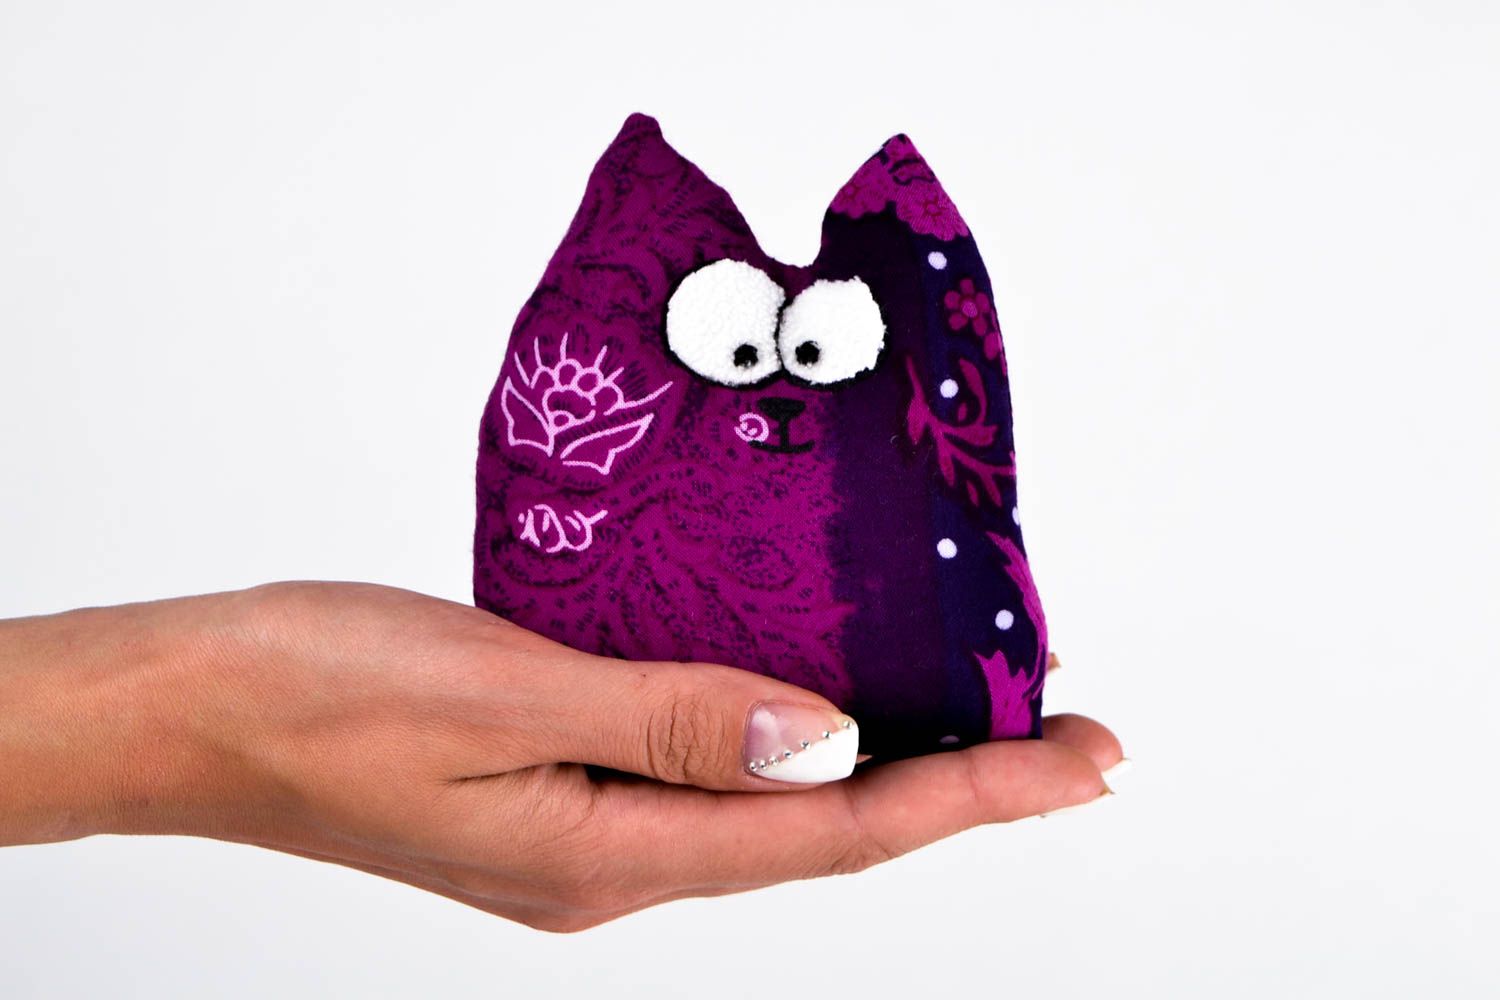 Интерьерная игрушка ручной работы игрушка из ткани фиолетовая игрушка кот фото 2